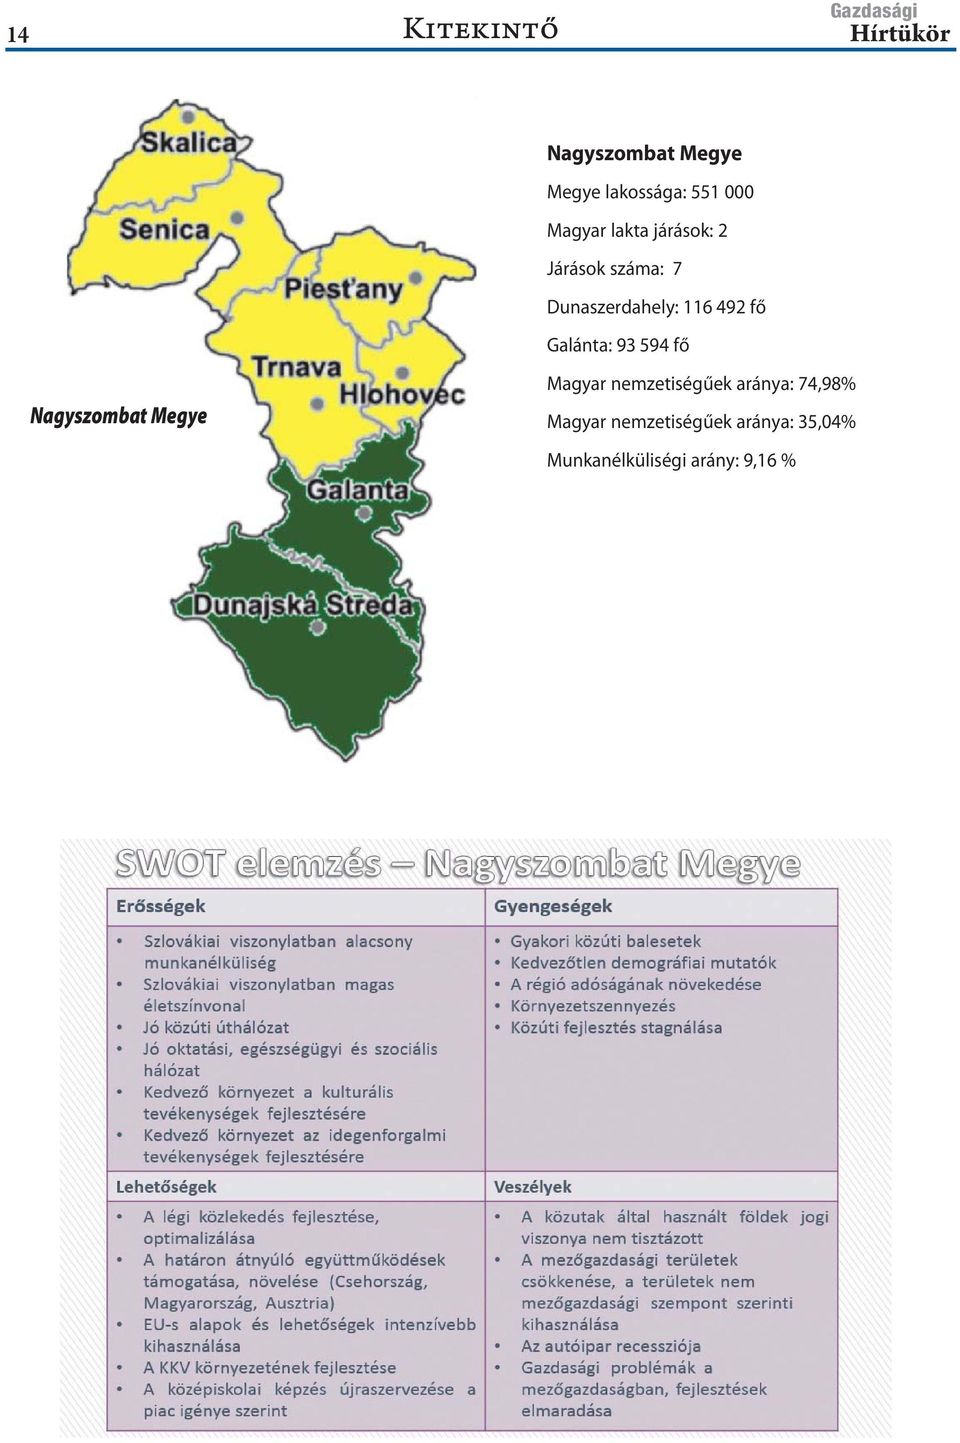 Galánta: 93 594 fő Nagyszombat Megye Magyar nemzetiségűek aránya: